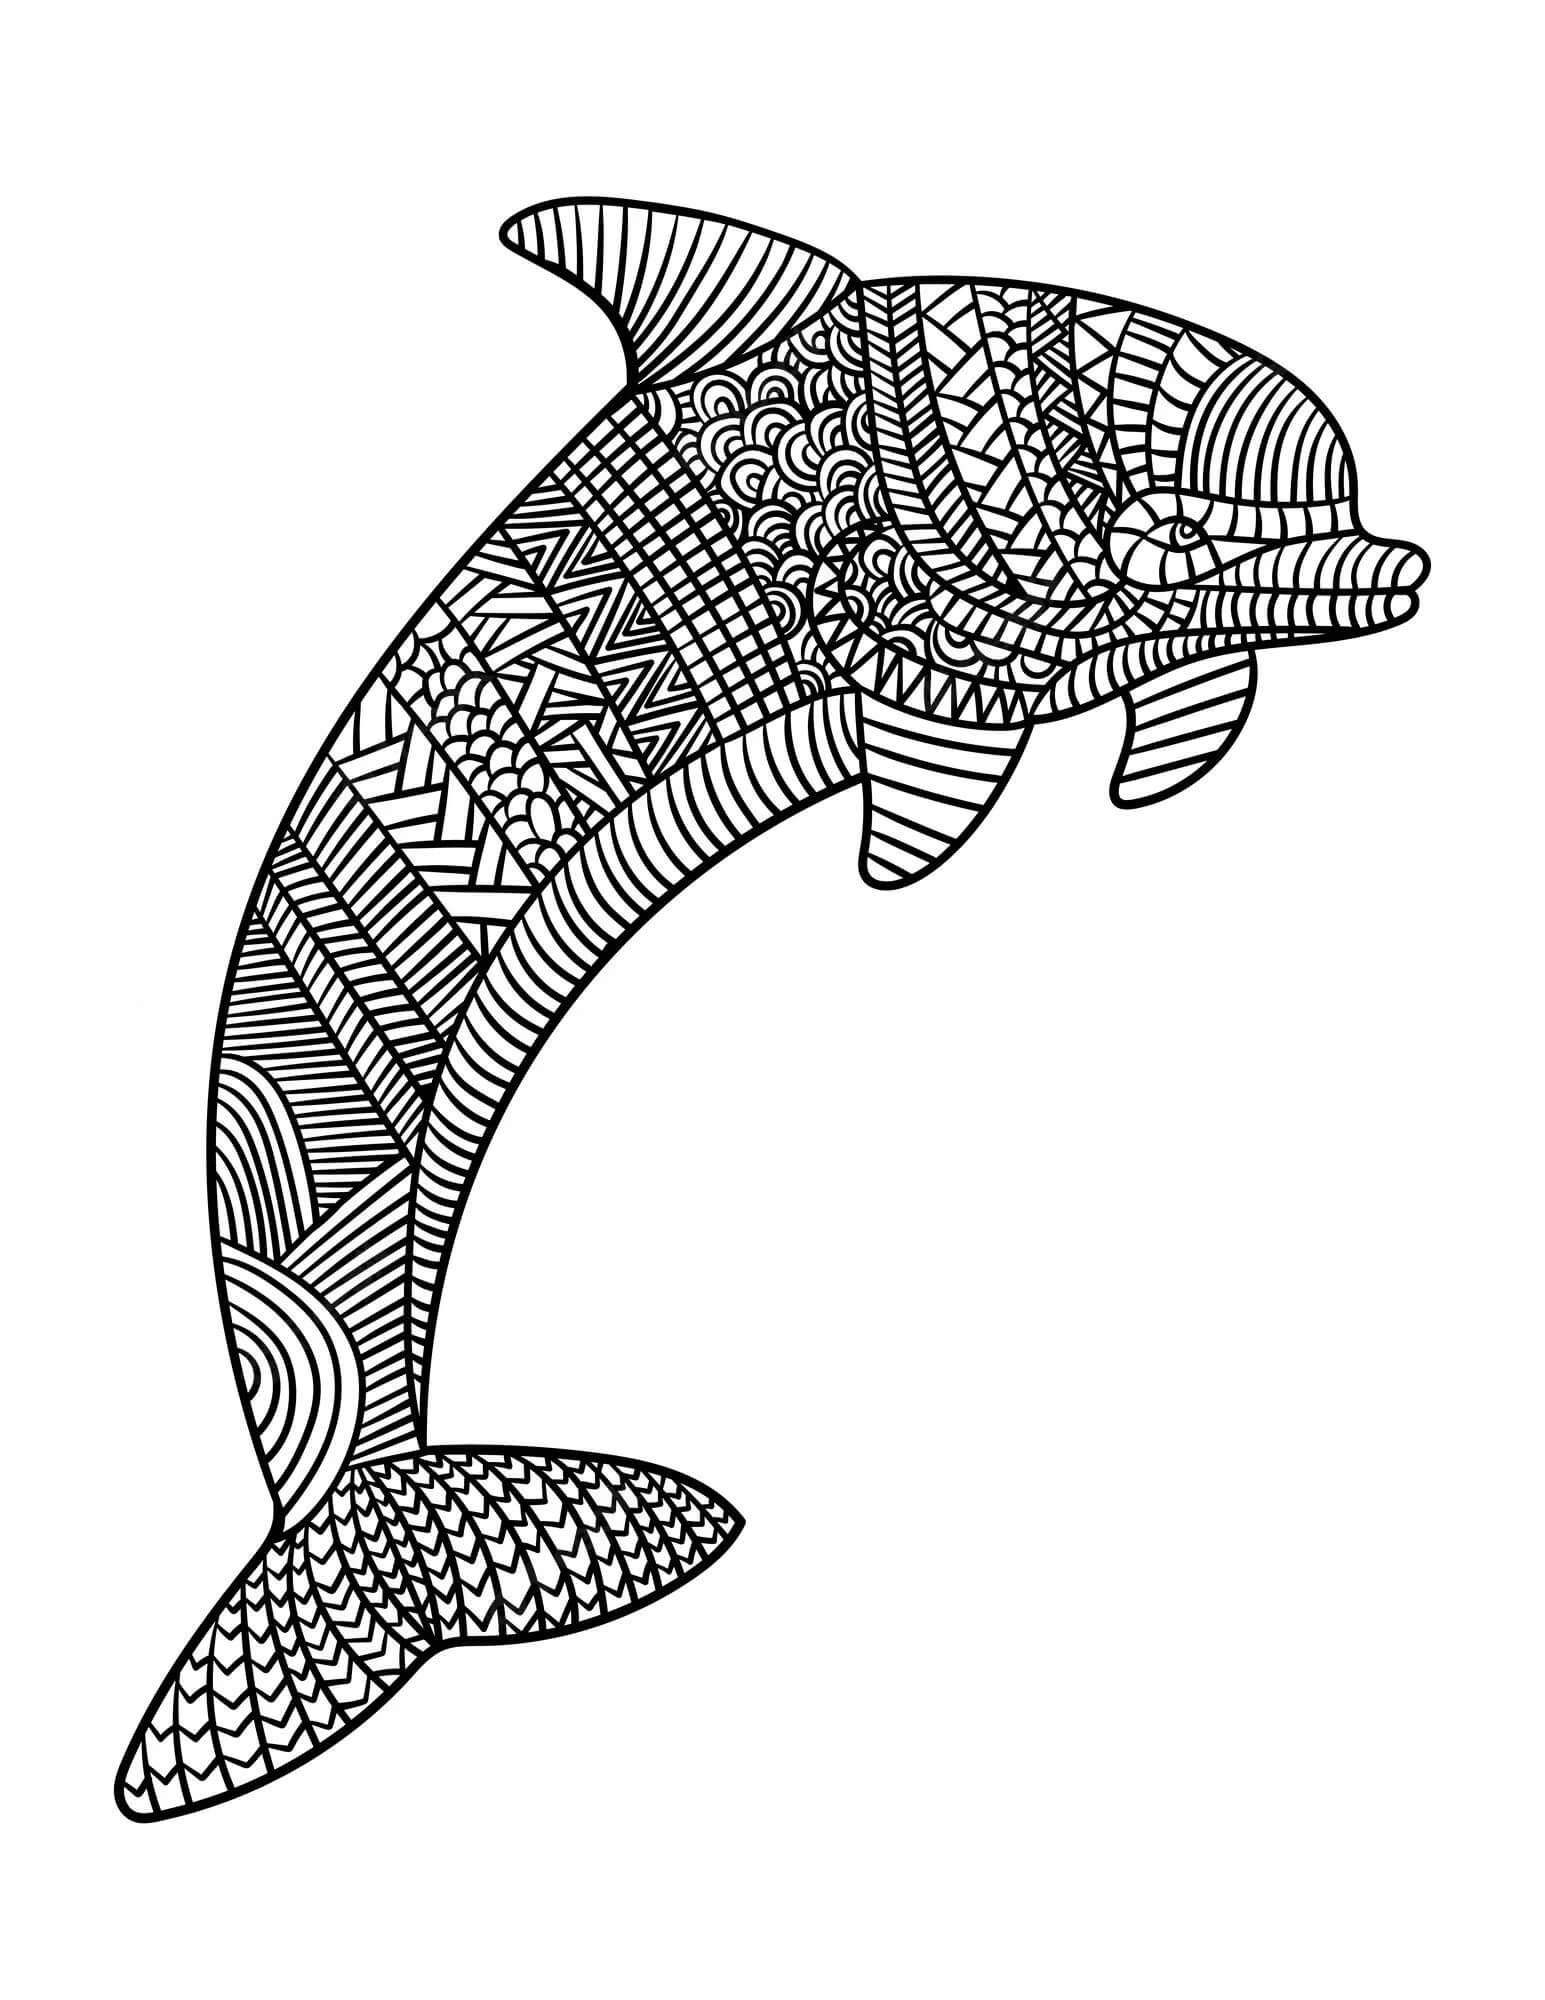 Mandala Dolphin Coloring Page - Sheet 1 Mandalas